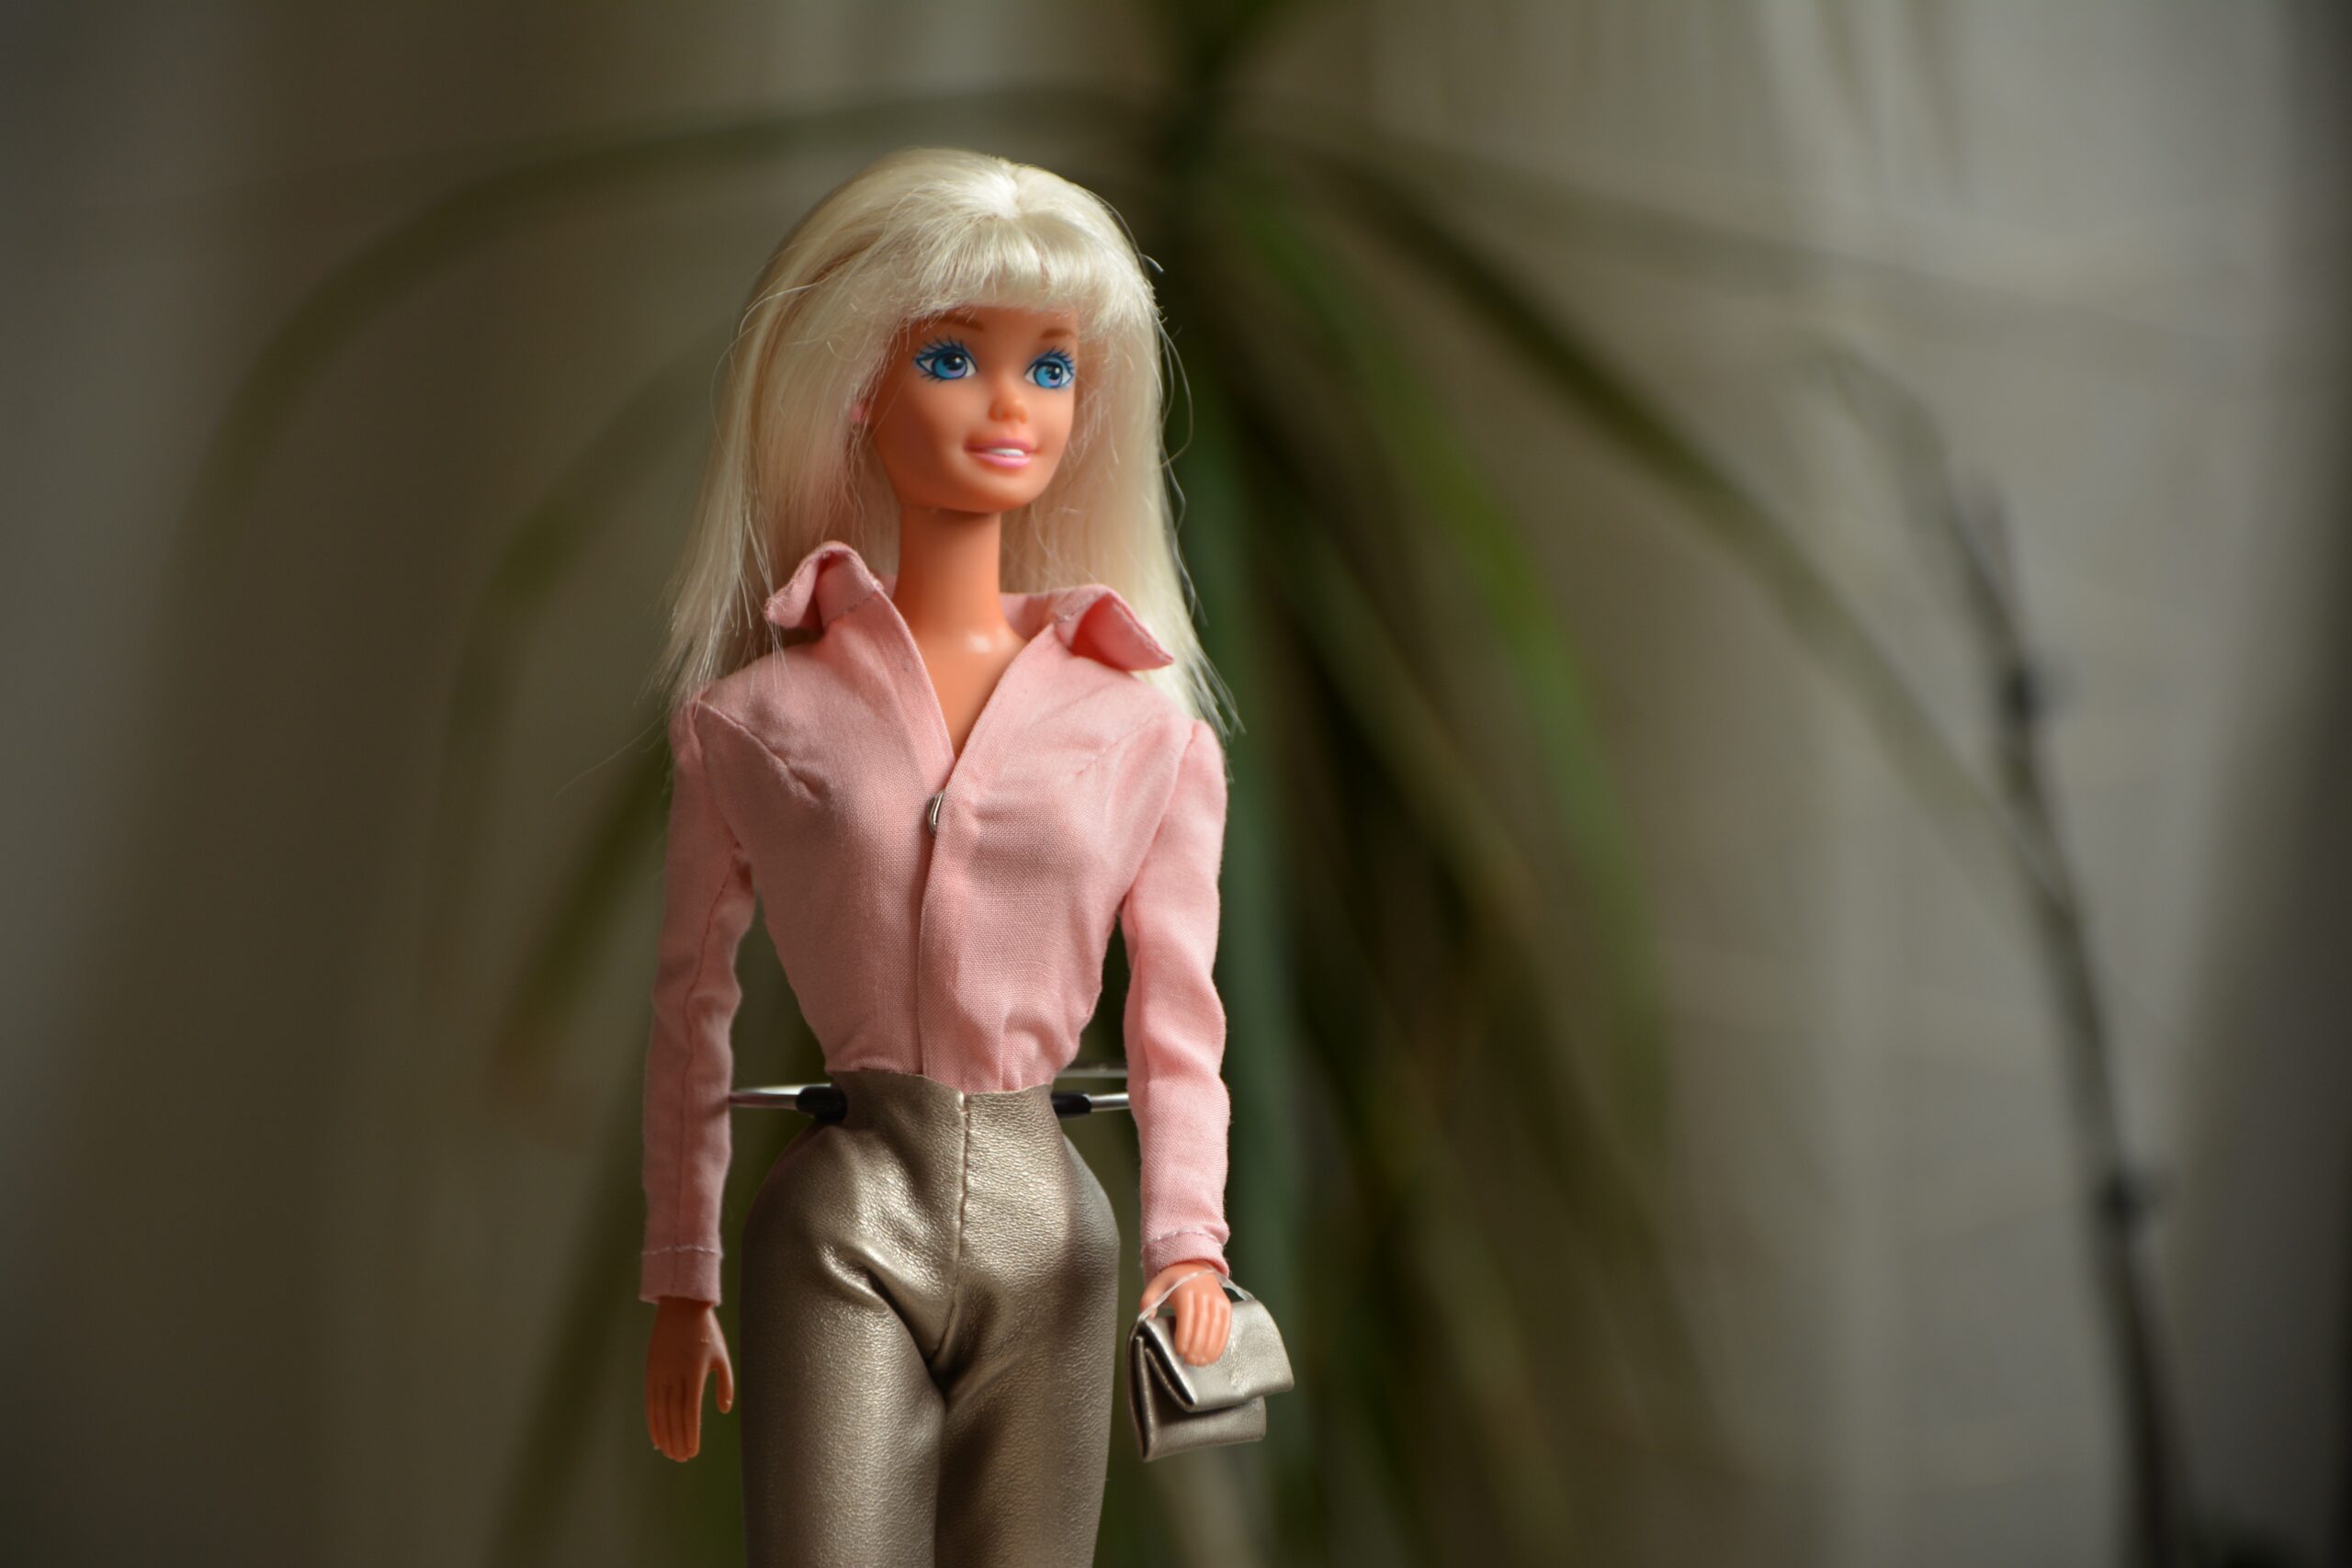 Marktplaats: bijna kwart miljoen zoekopdrachten naar Barbie sinds succesvolle bioscoopfilm